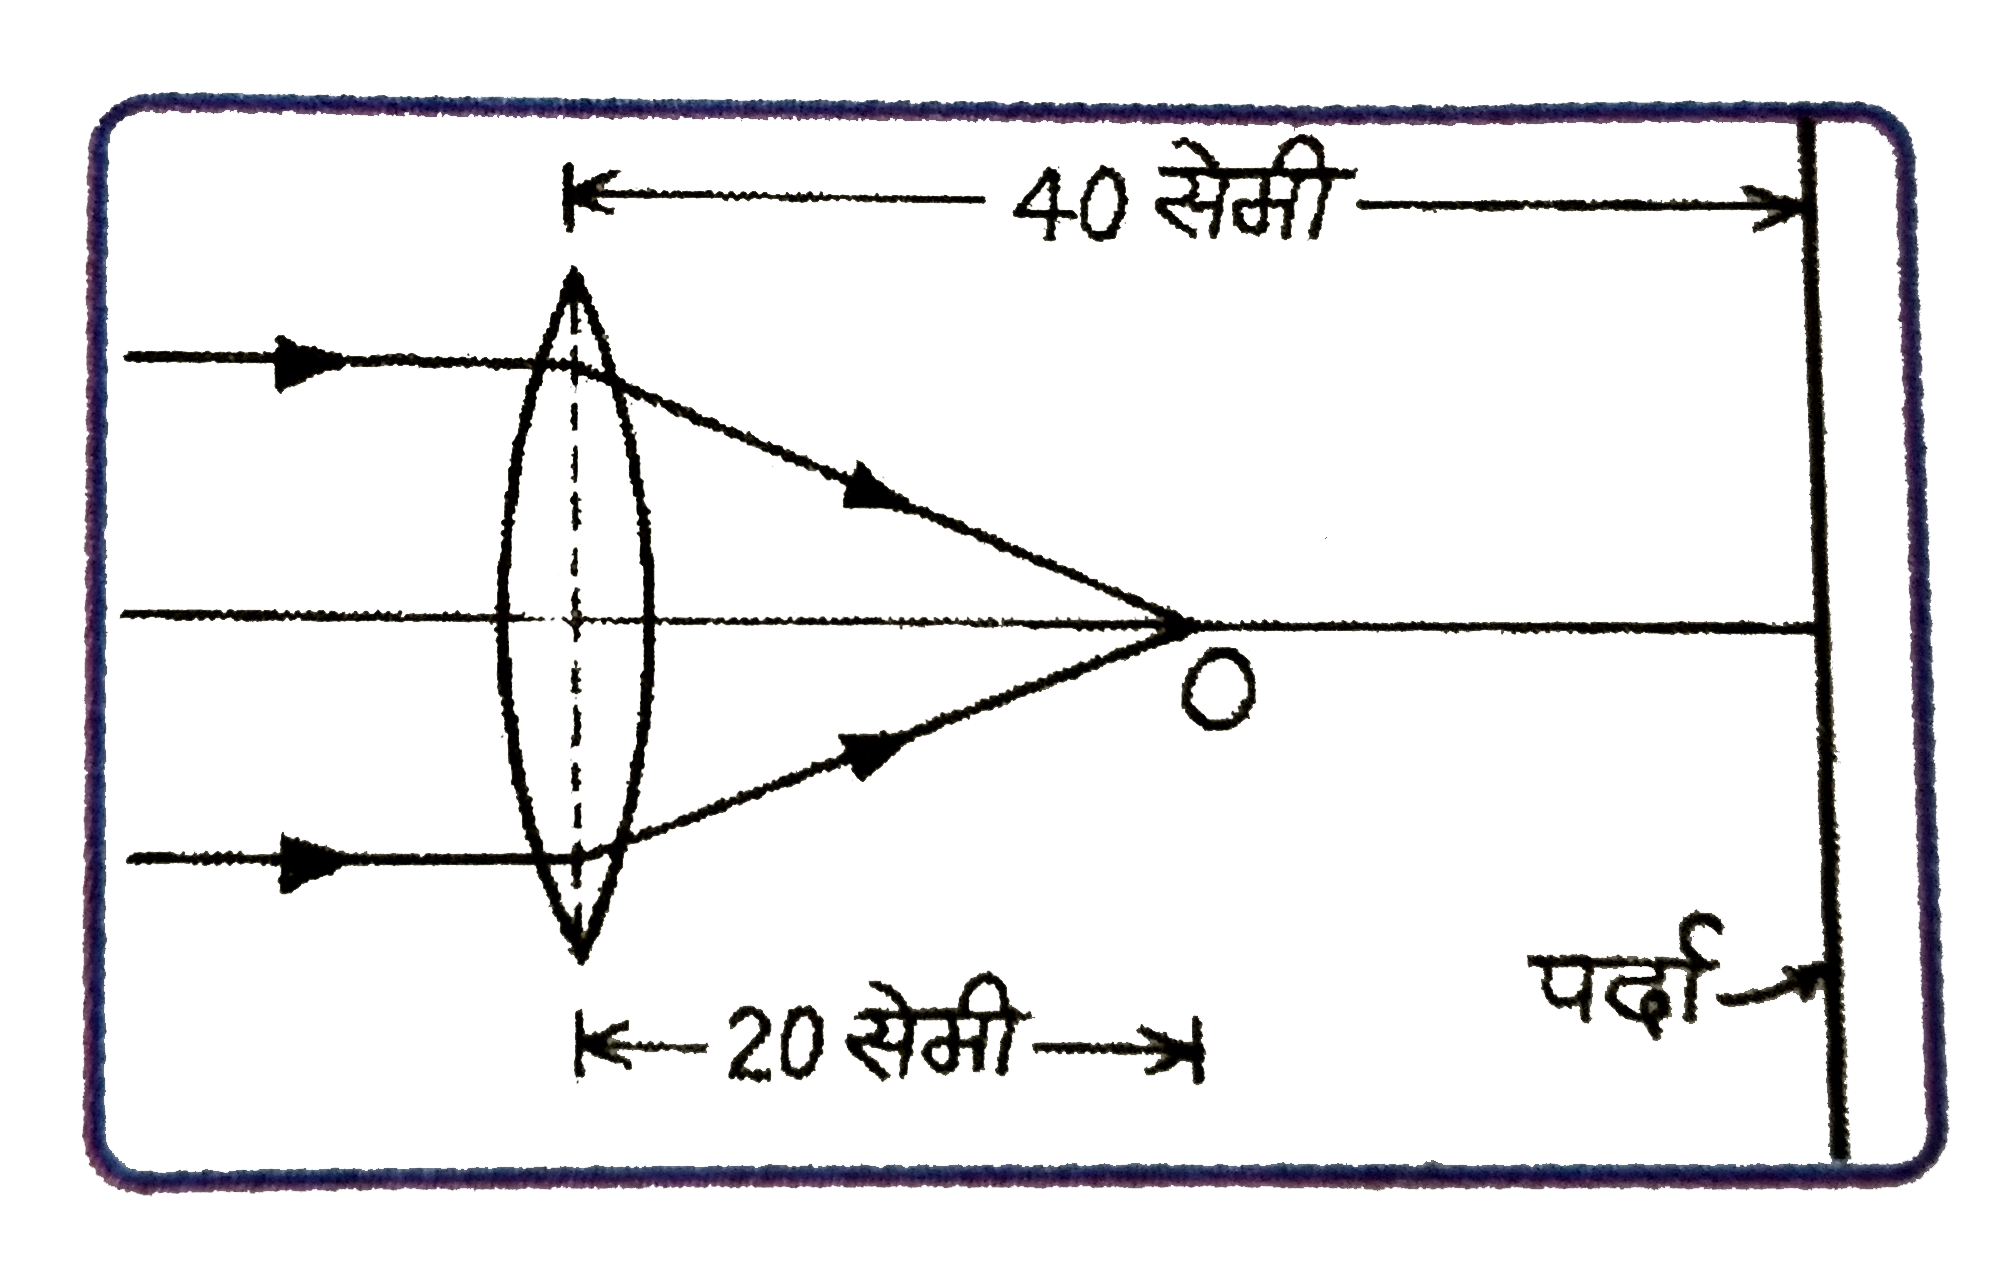 संलग्न  चित्र में बिन्दु O पर बने प्रतिबिम्ब को पर्दे पर बनाने के लिये कैसा व किस फोकस-दूरी  का लेन्स चाहिए जबकि  दूसरे लेन्स को (i) पहले लेन्स से सटा कर रखें, (ii) पहले लेन्स से 10 सेमी दूर O की ओर रखें ?